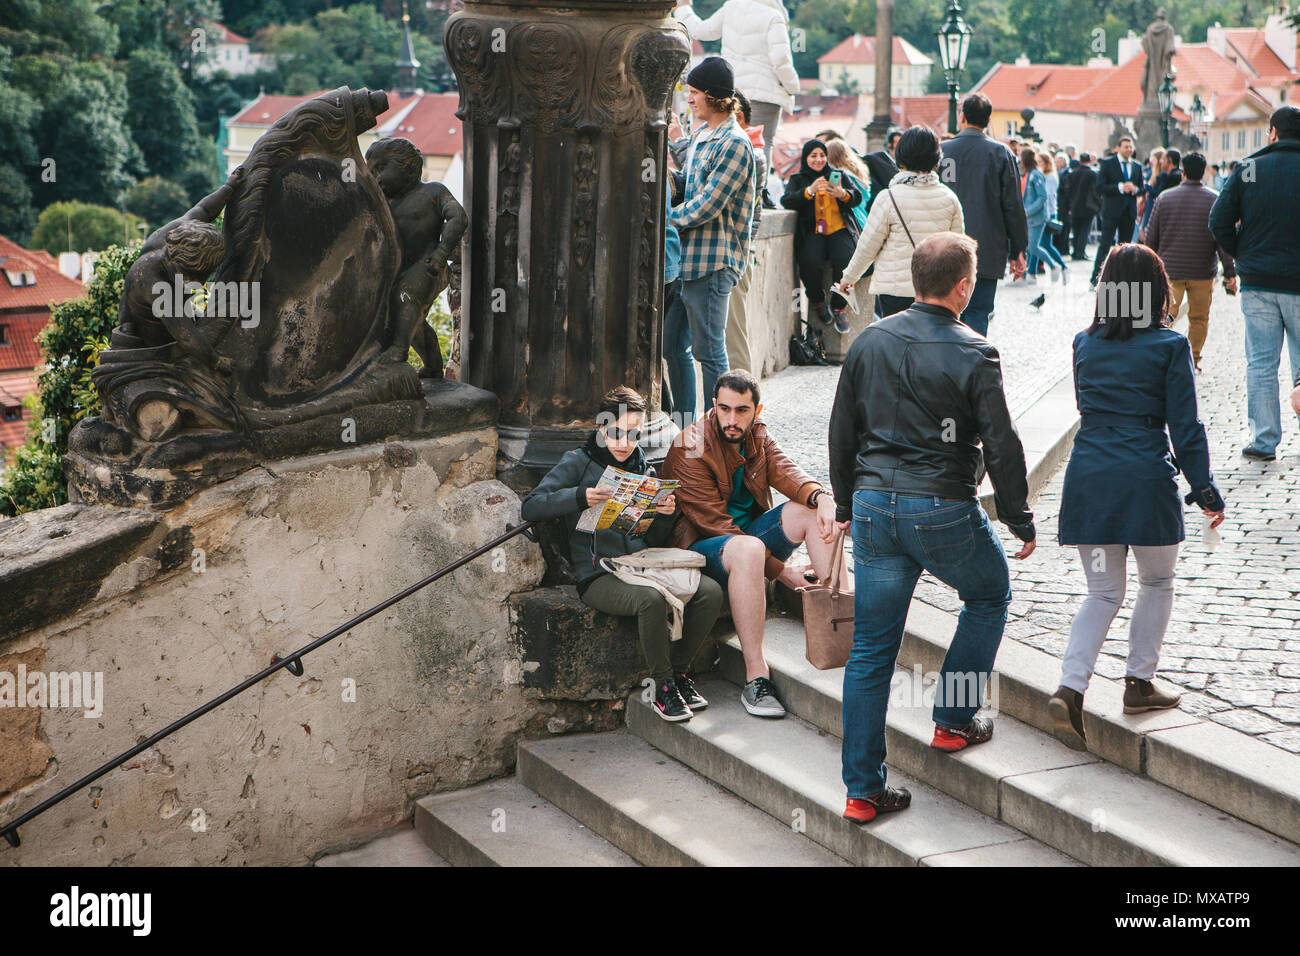 Prague, le 18 septembre 2017 : l'homme et la femme ou les touristes s'asseoir sur l'escalier et se détendre. D'autres personnes sont engagées dans les activités quotidiennes. Banque D'Images